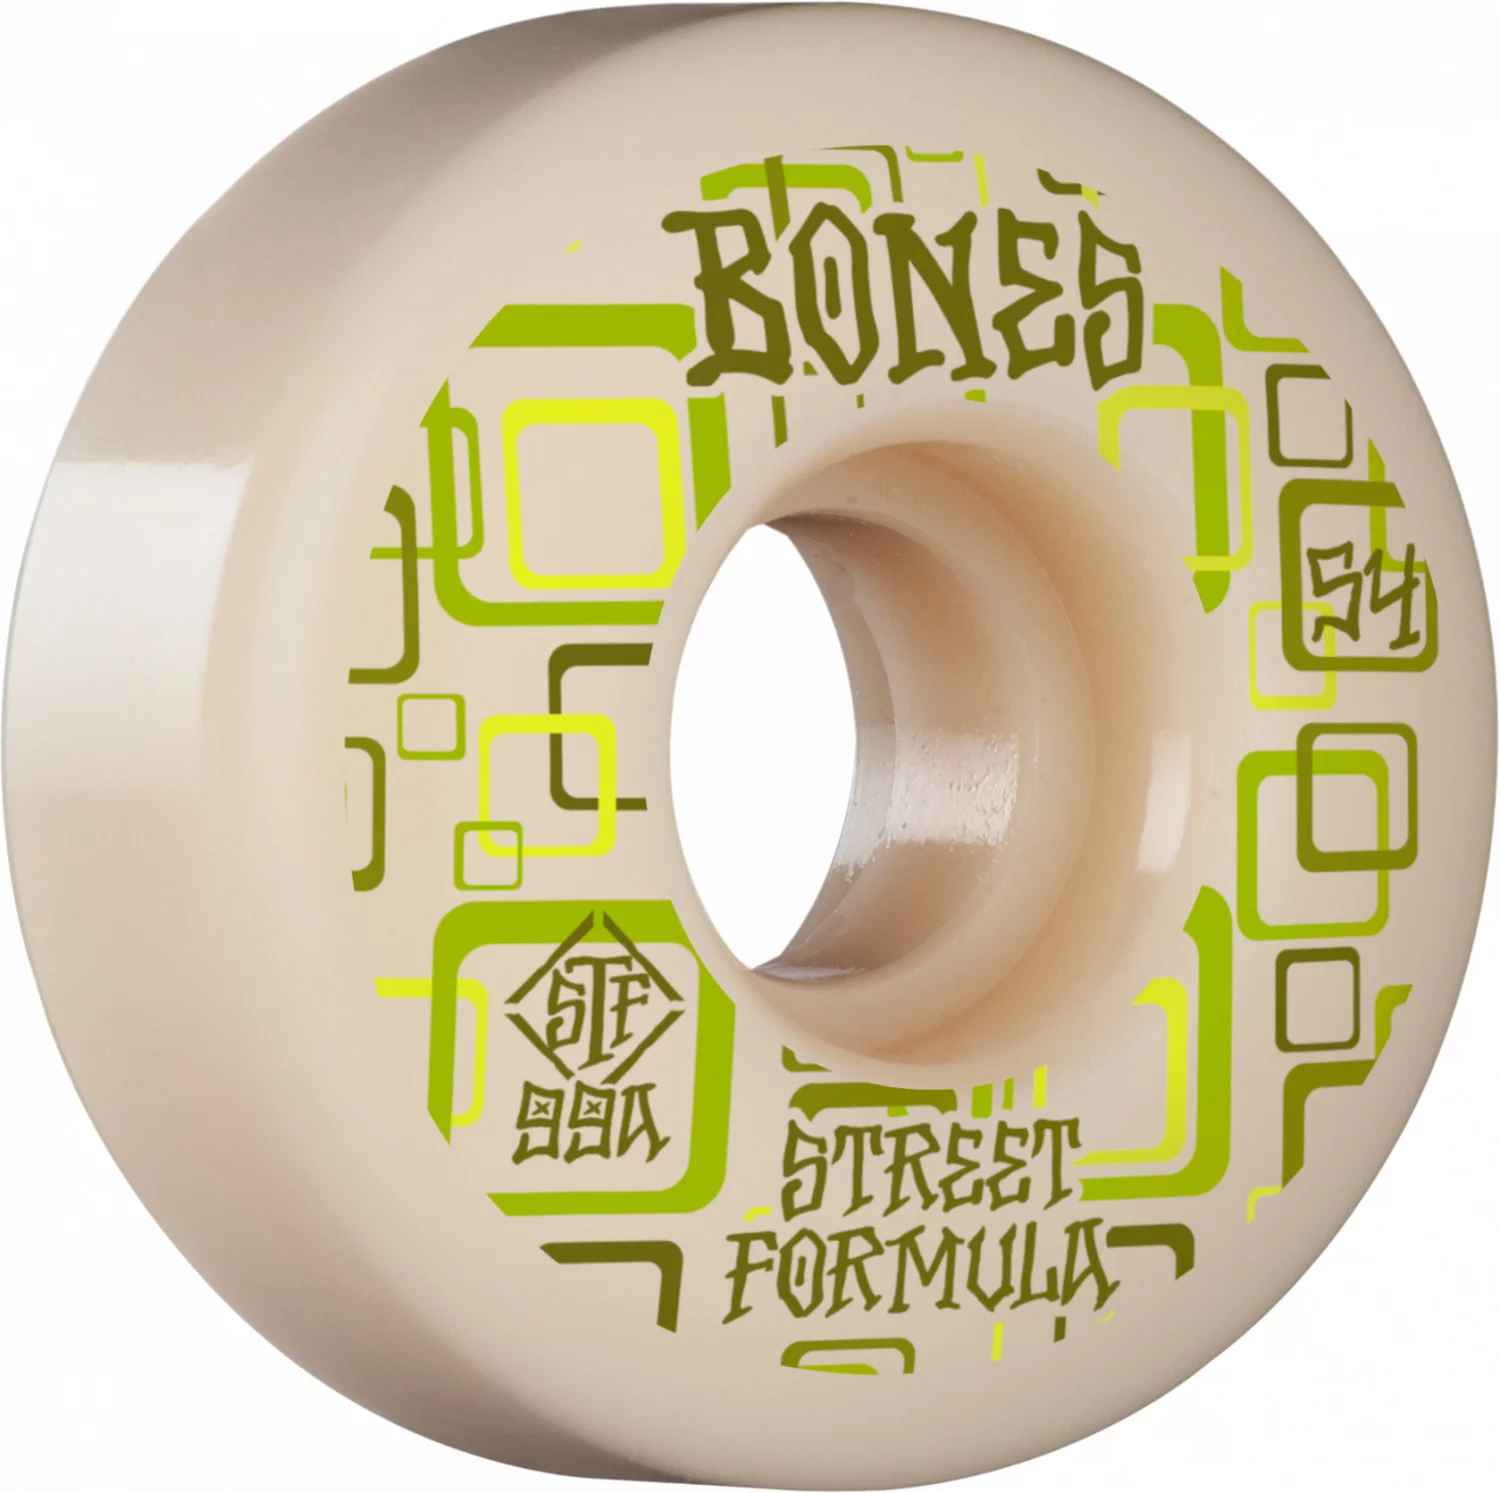 Bones STF RETROS V3 Series Skateboard Wheels 52mm 99a duro Slims 